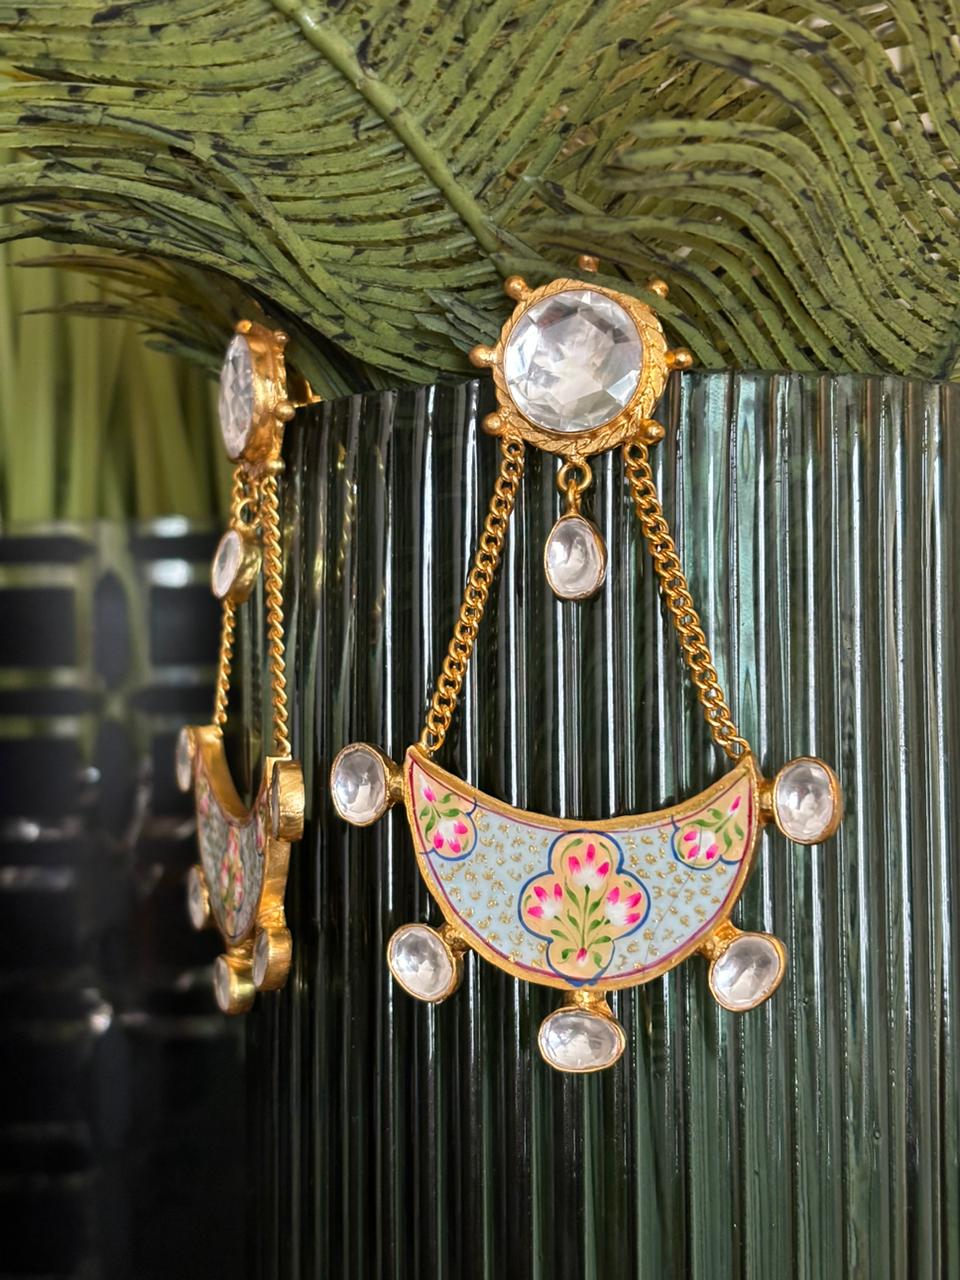 Ammara earrings